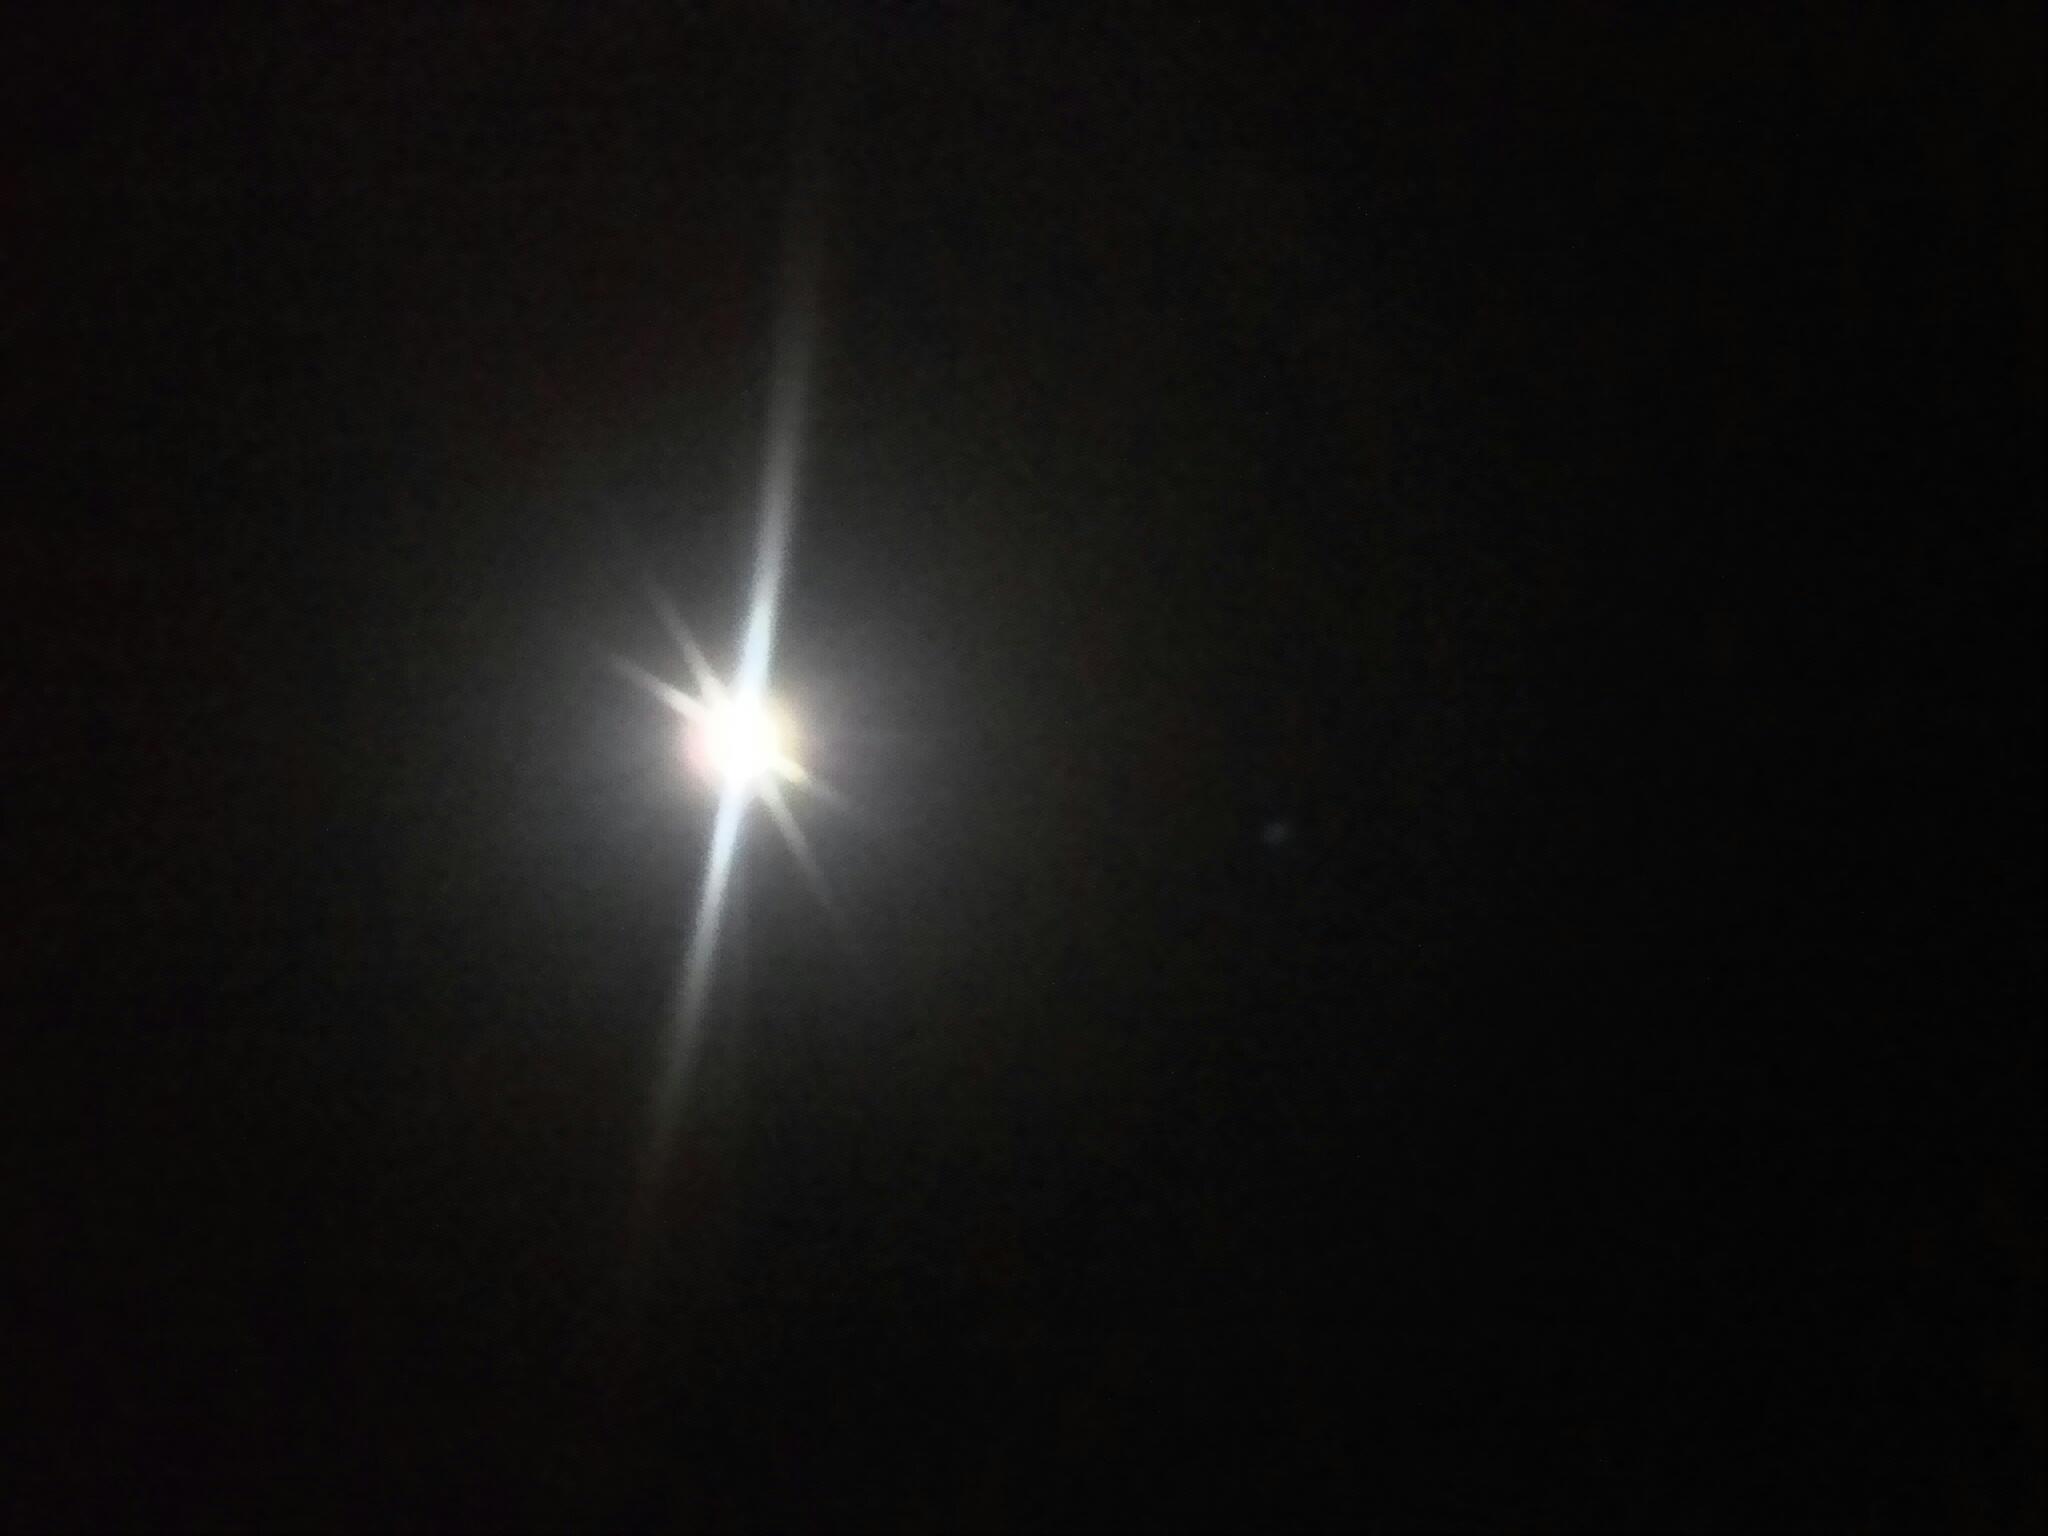 คืนนี้พระจันทร์เต็มดวง น้าป้อมบอกว่าดีสำหรับตกหมึกชายฝั่ง เพราะว่าถ้าคืนเดือนมืดหมึกจะไปรวมกันตามเรื